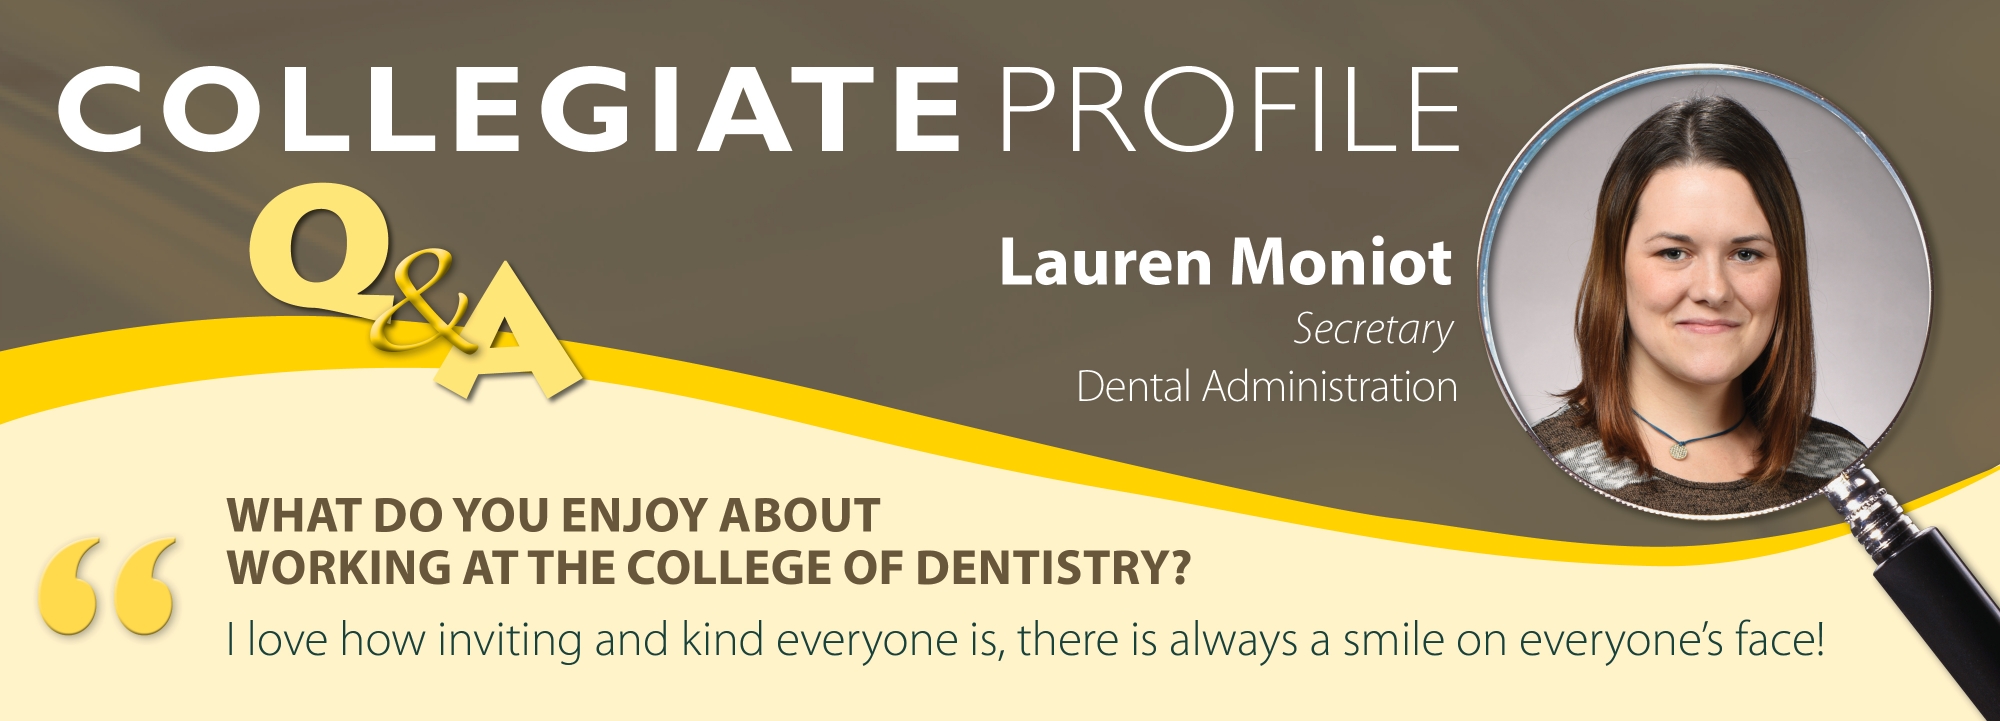 collegiate profile for Lauren Moniot